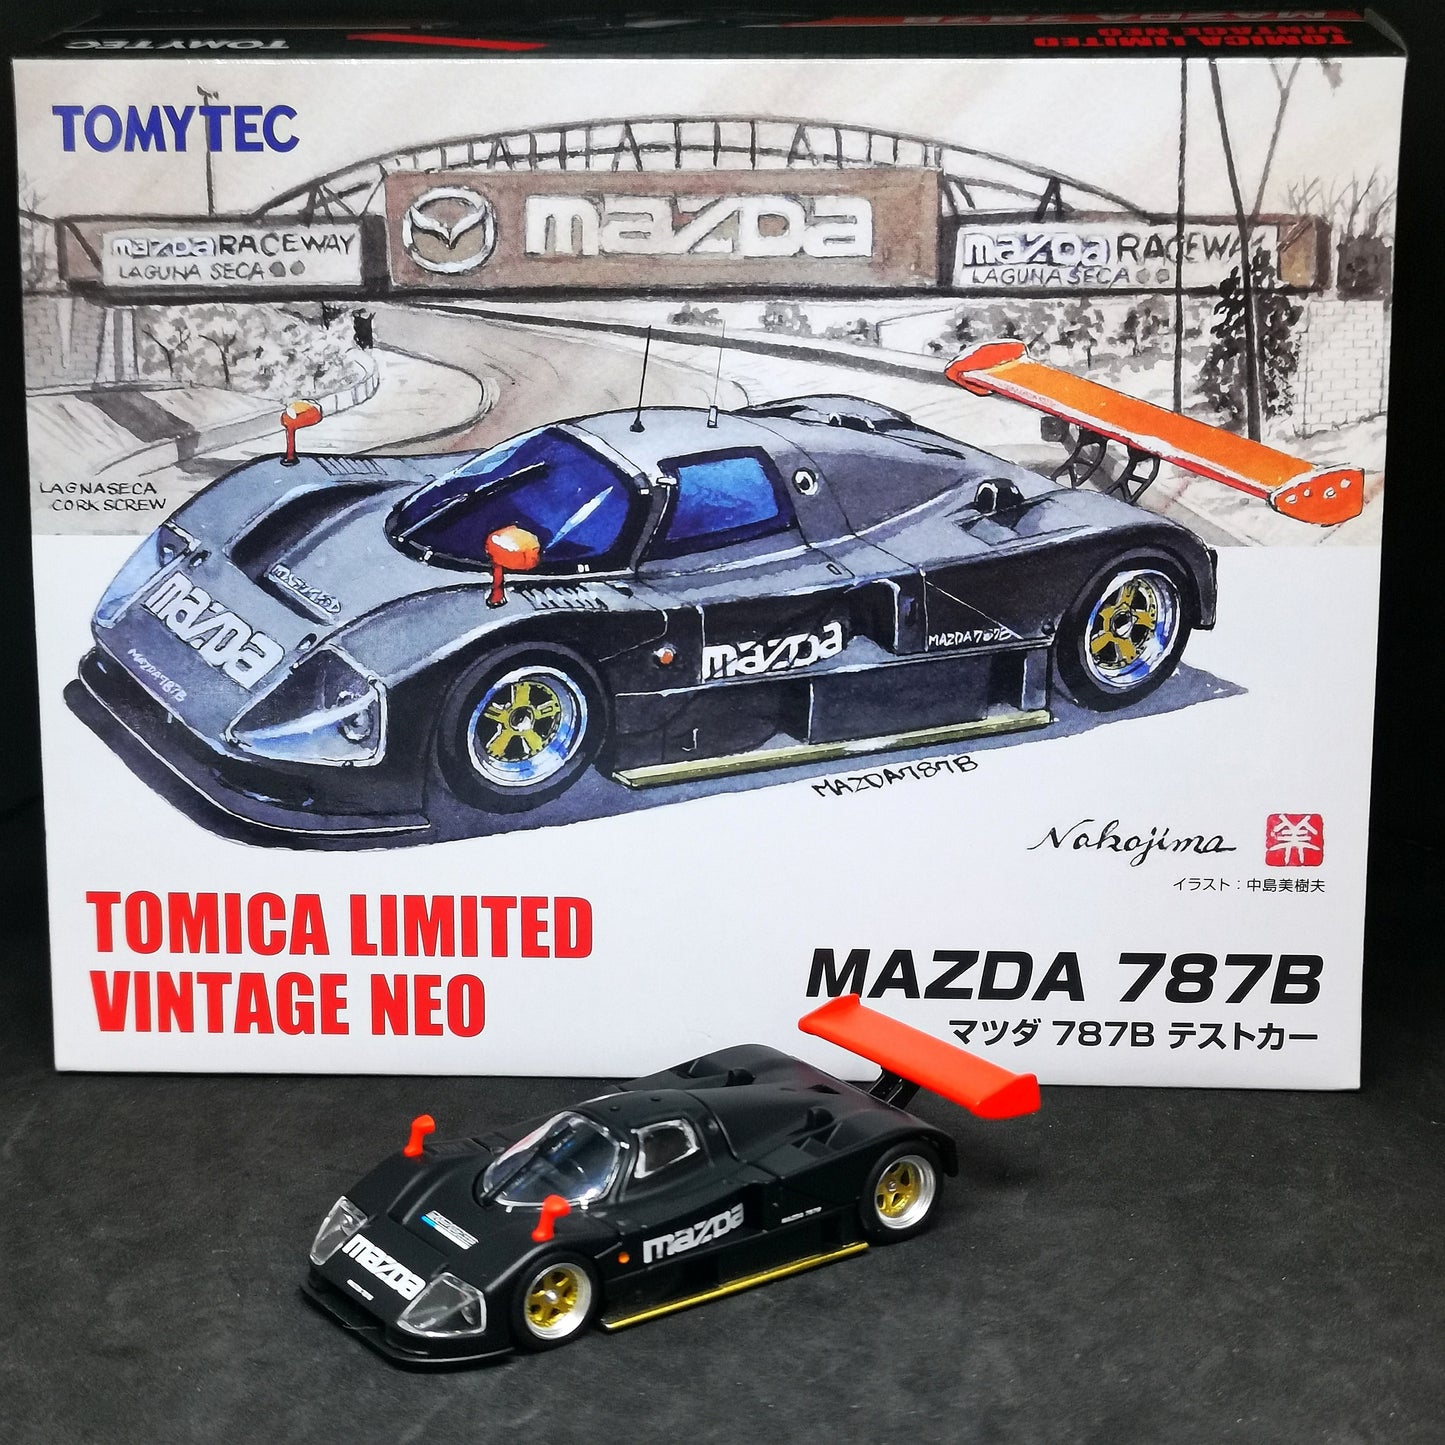 Tomica Limited Vintage Neo Mazda 787B Test Car